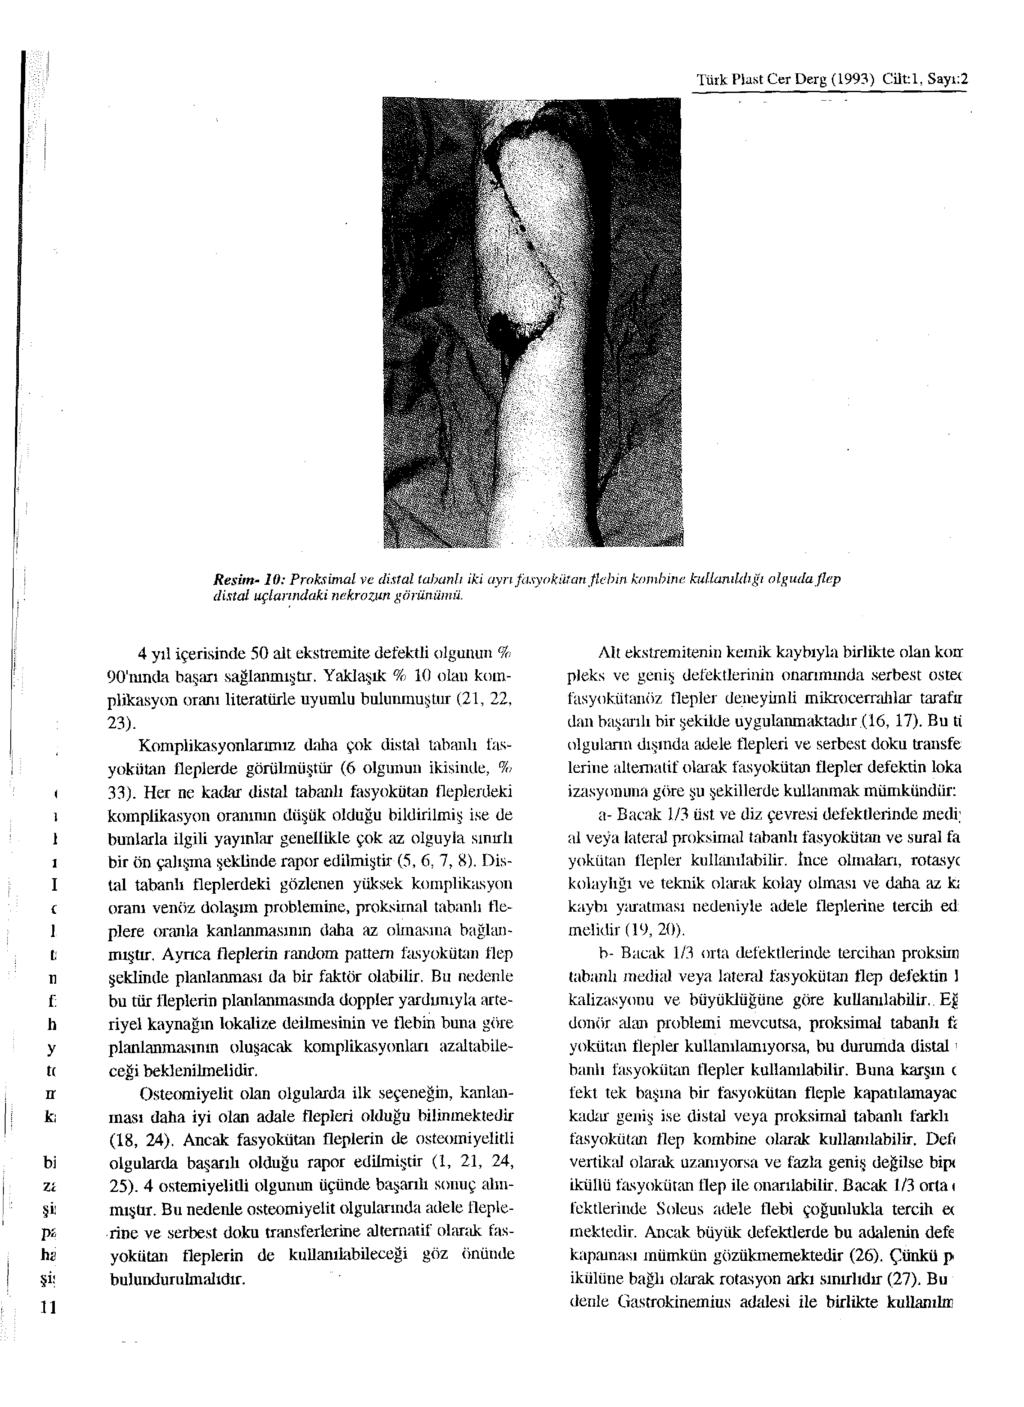 Türk Plast Cer Derg (1993) Cilt: 1, Sayı:2 Resim-10: Proksimal ve distal tabanlı iki ayrı fasyokütan flebin kombine kullanıldığı olguda flep distal uçlarındaki nekrozun görünümü.